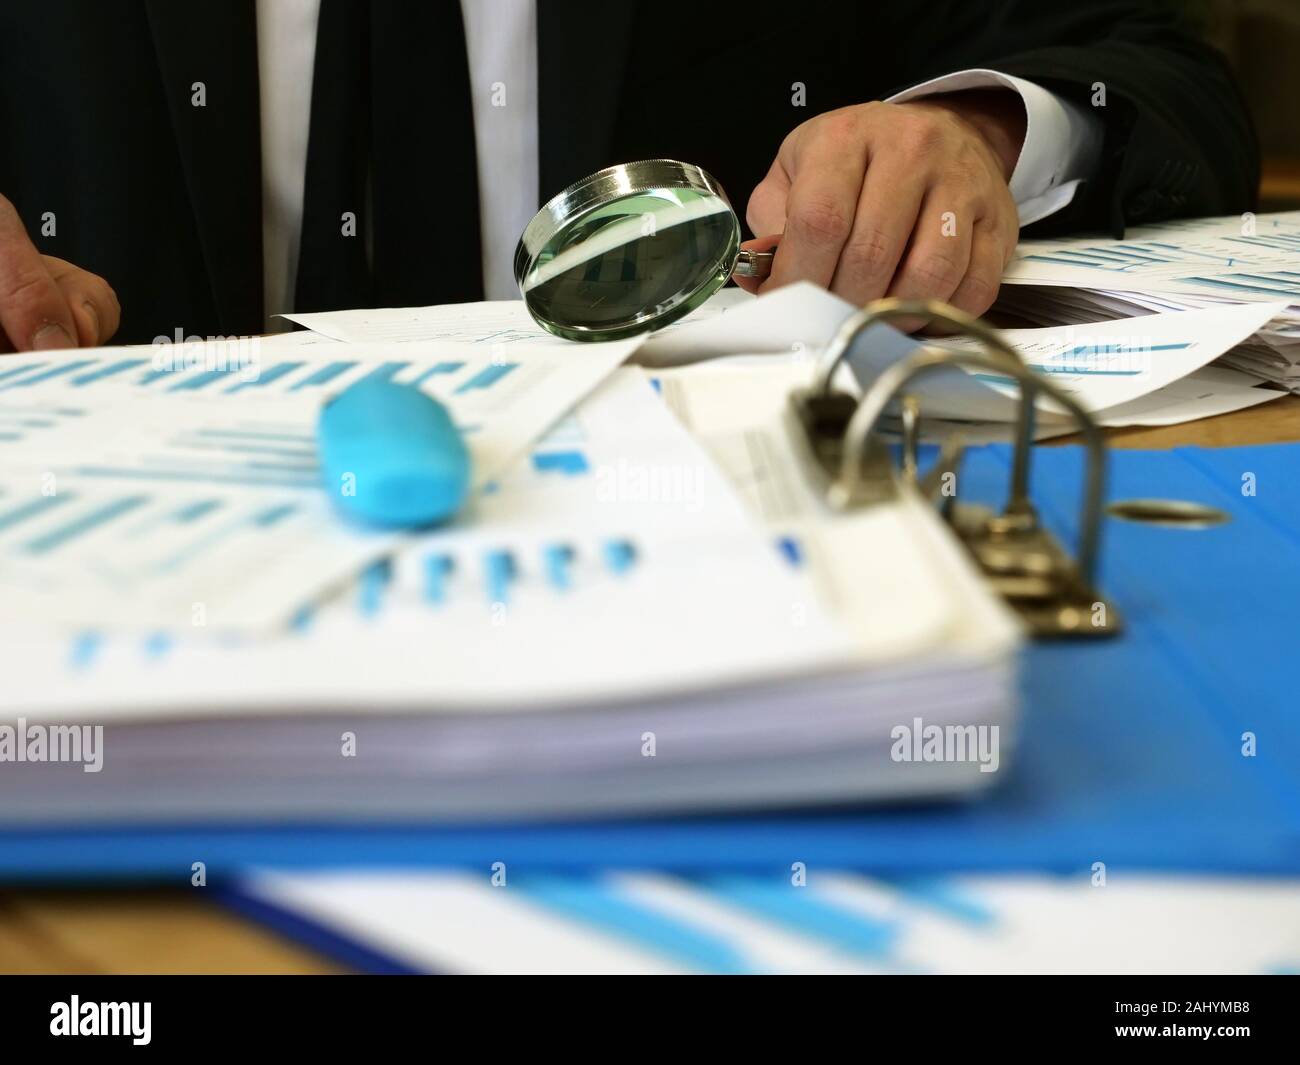 Concetto di audit. Un uomo si siede a un tavolo e controlla i documenti. Pila di carte e di una lente di ingrandimento. Foto Stock